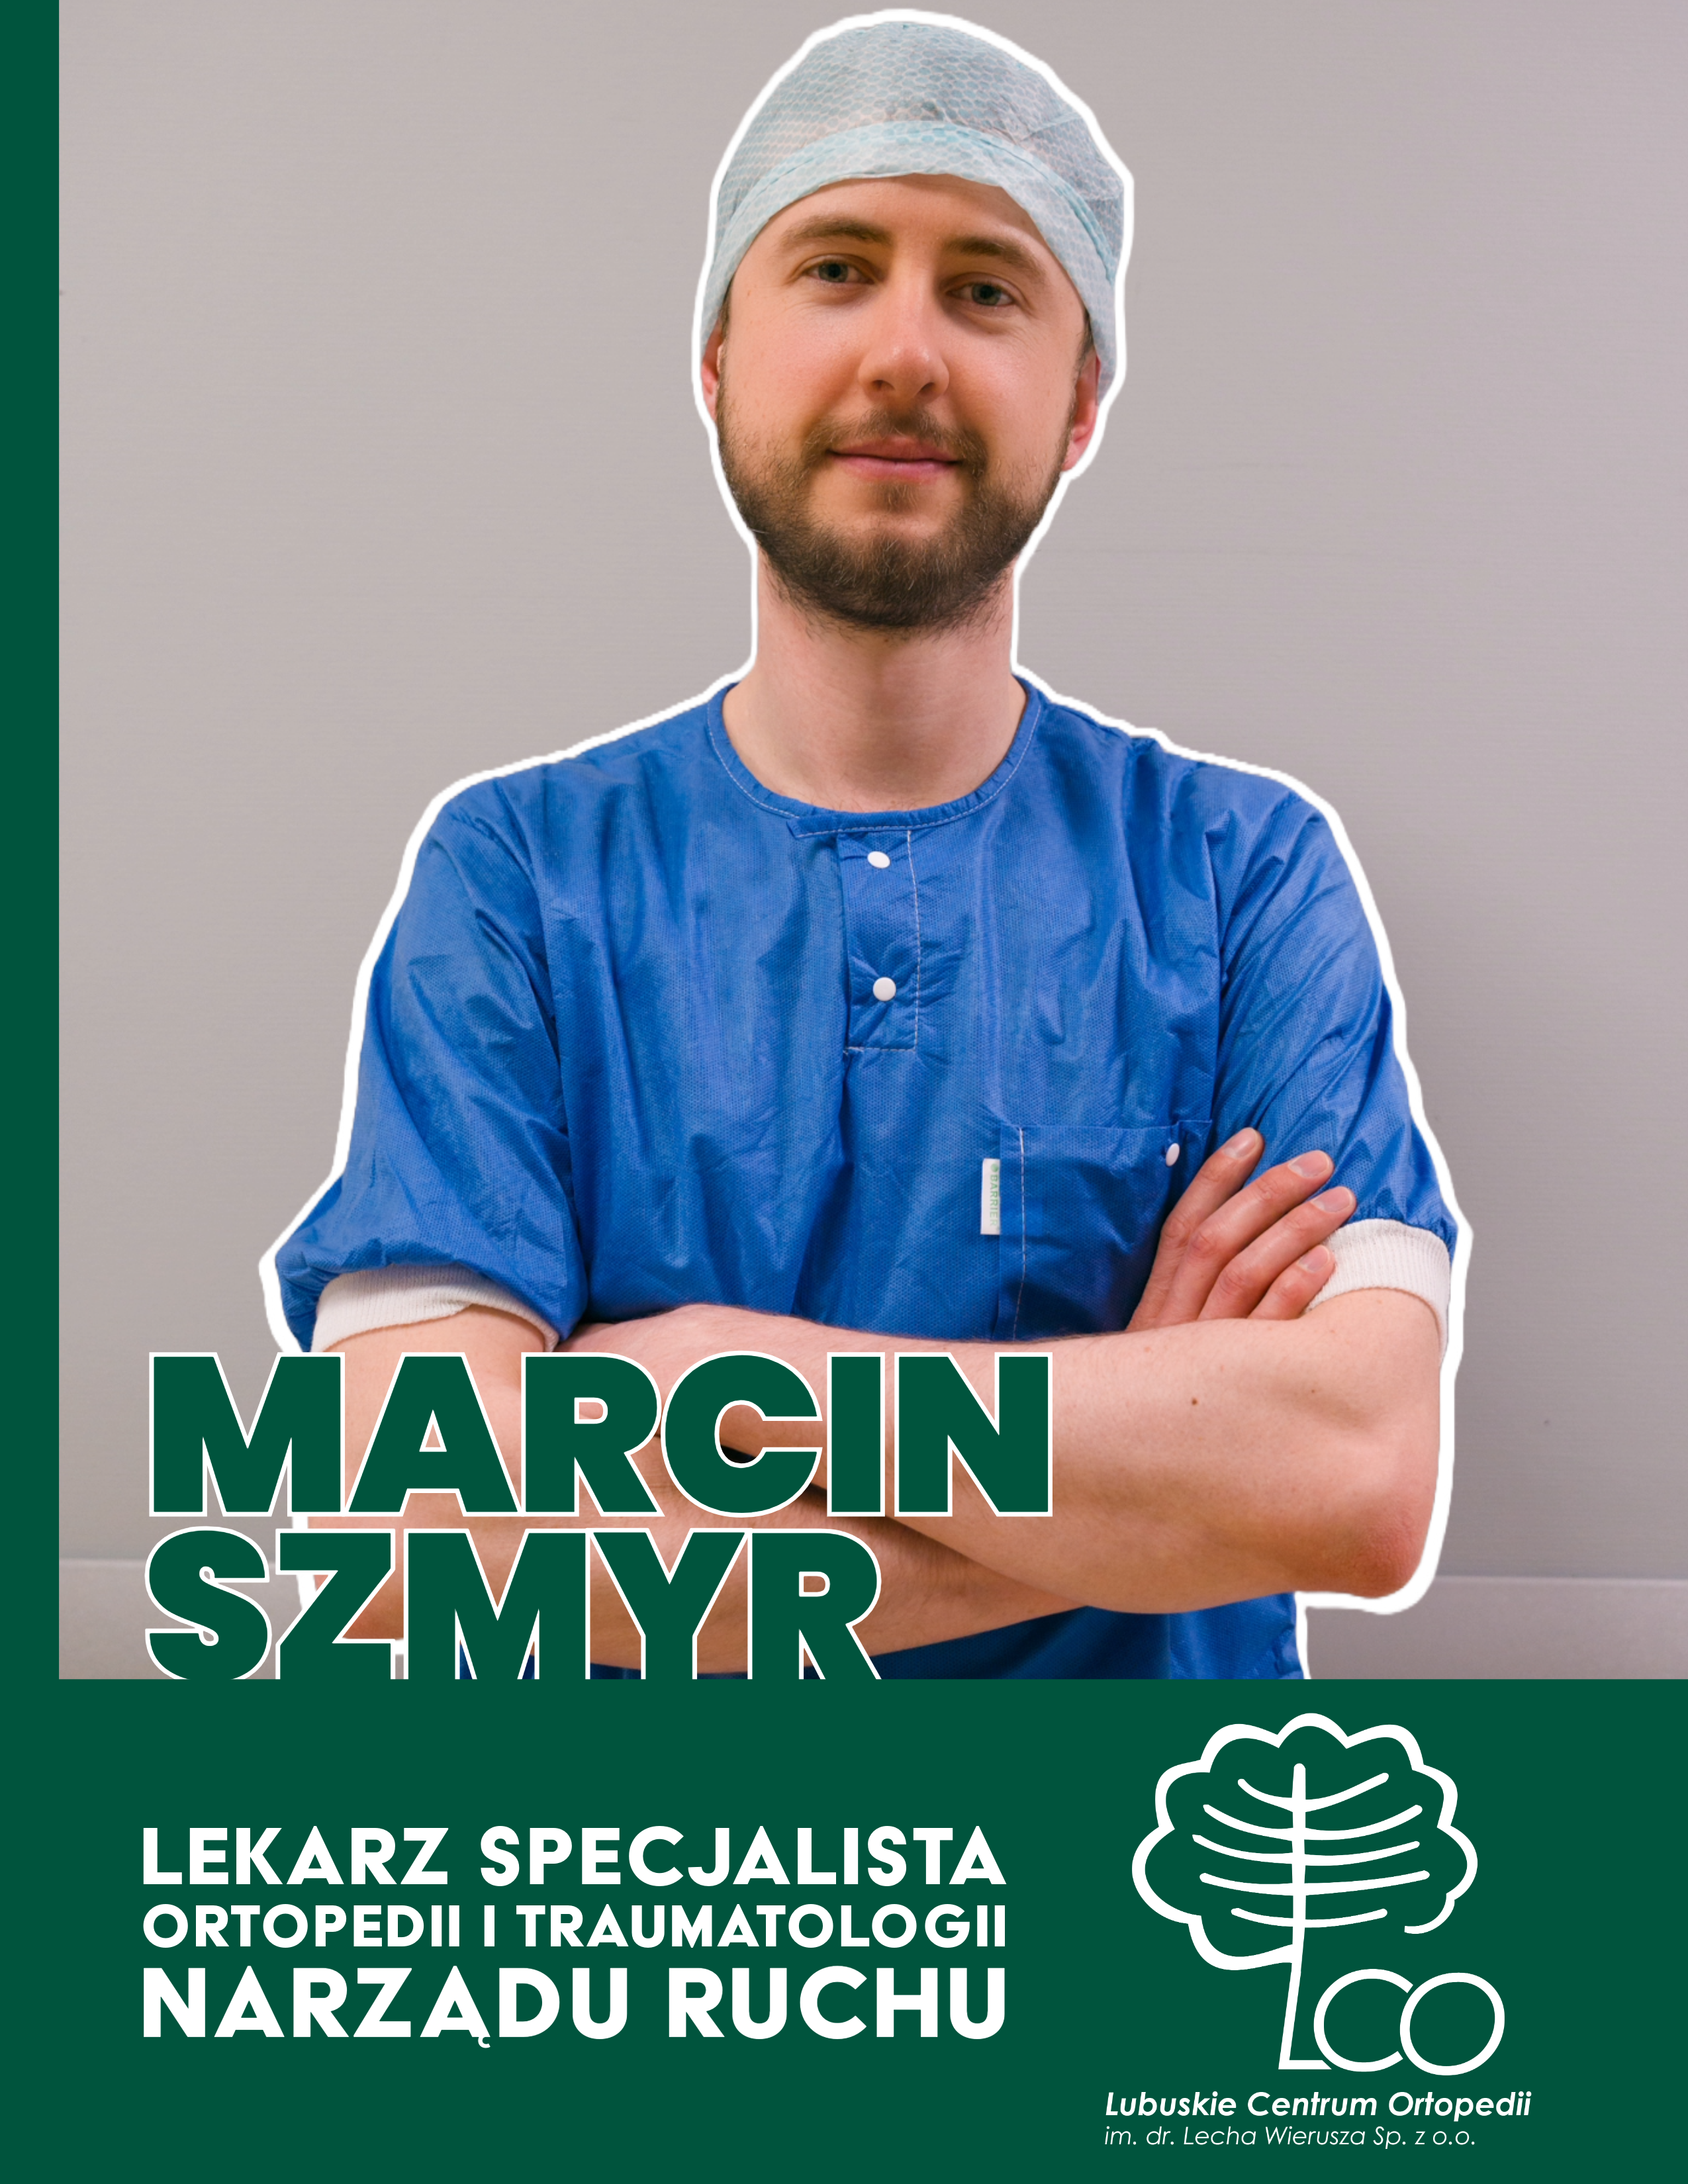 You are currently viewing Poznaj zespół LCO – lek. Marcin Szmyr